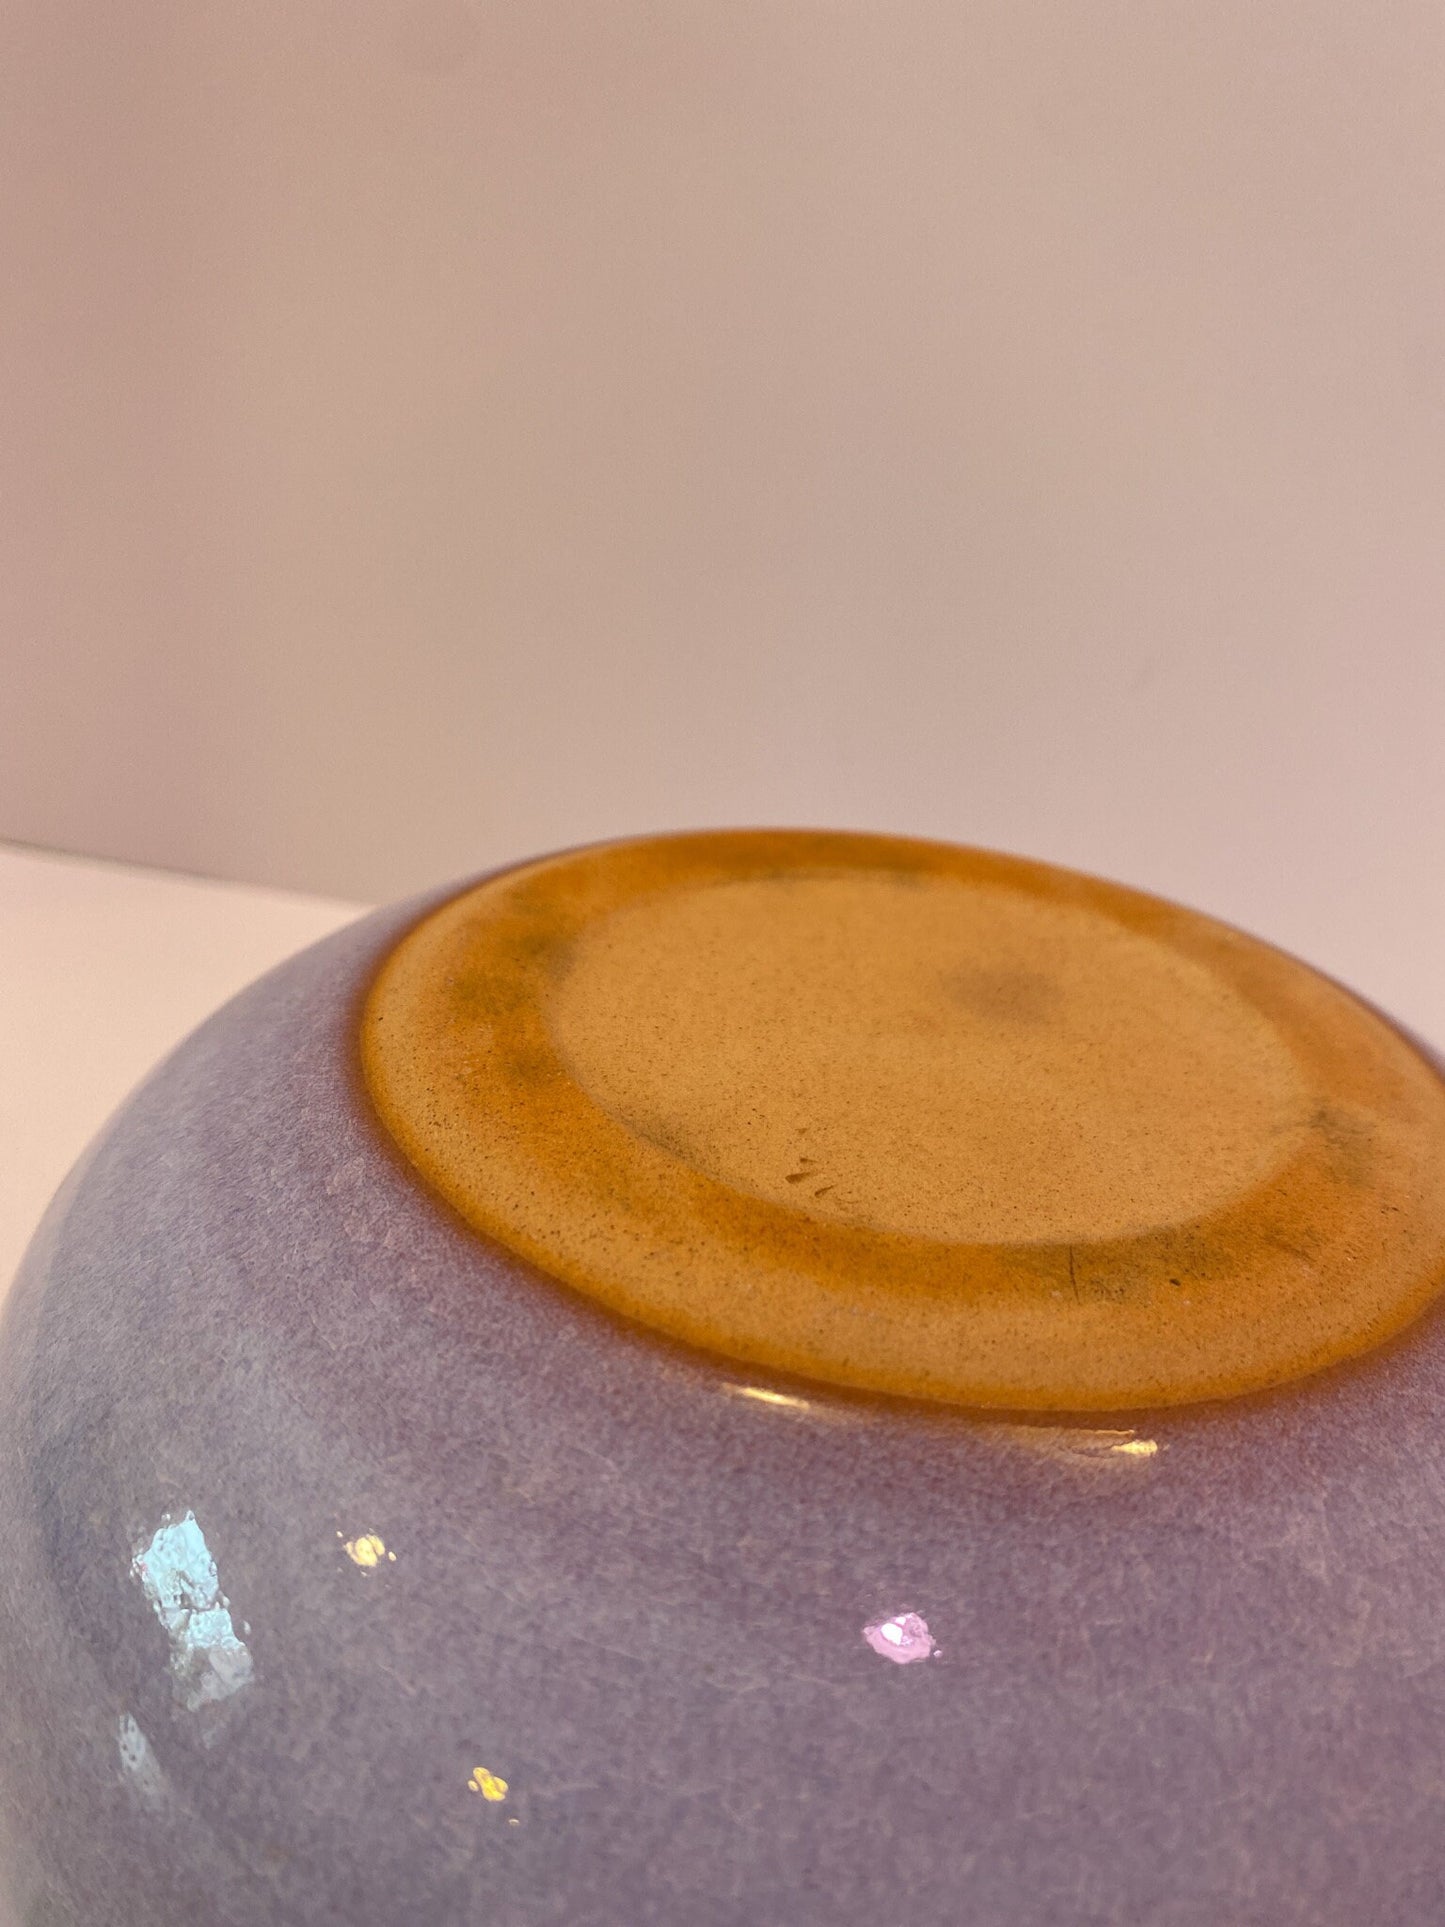 萩焼 椿秀窯　Japanese Ceramic Saucer, Hagi Yaki Ware, Chinshu-gama , Size 6.5 inch diameter x 3.25" height, comes with original box